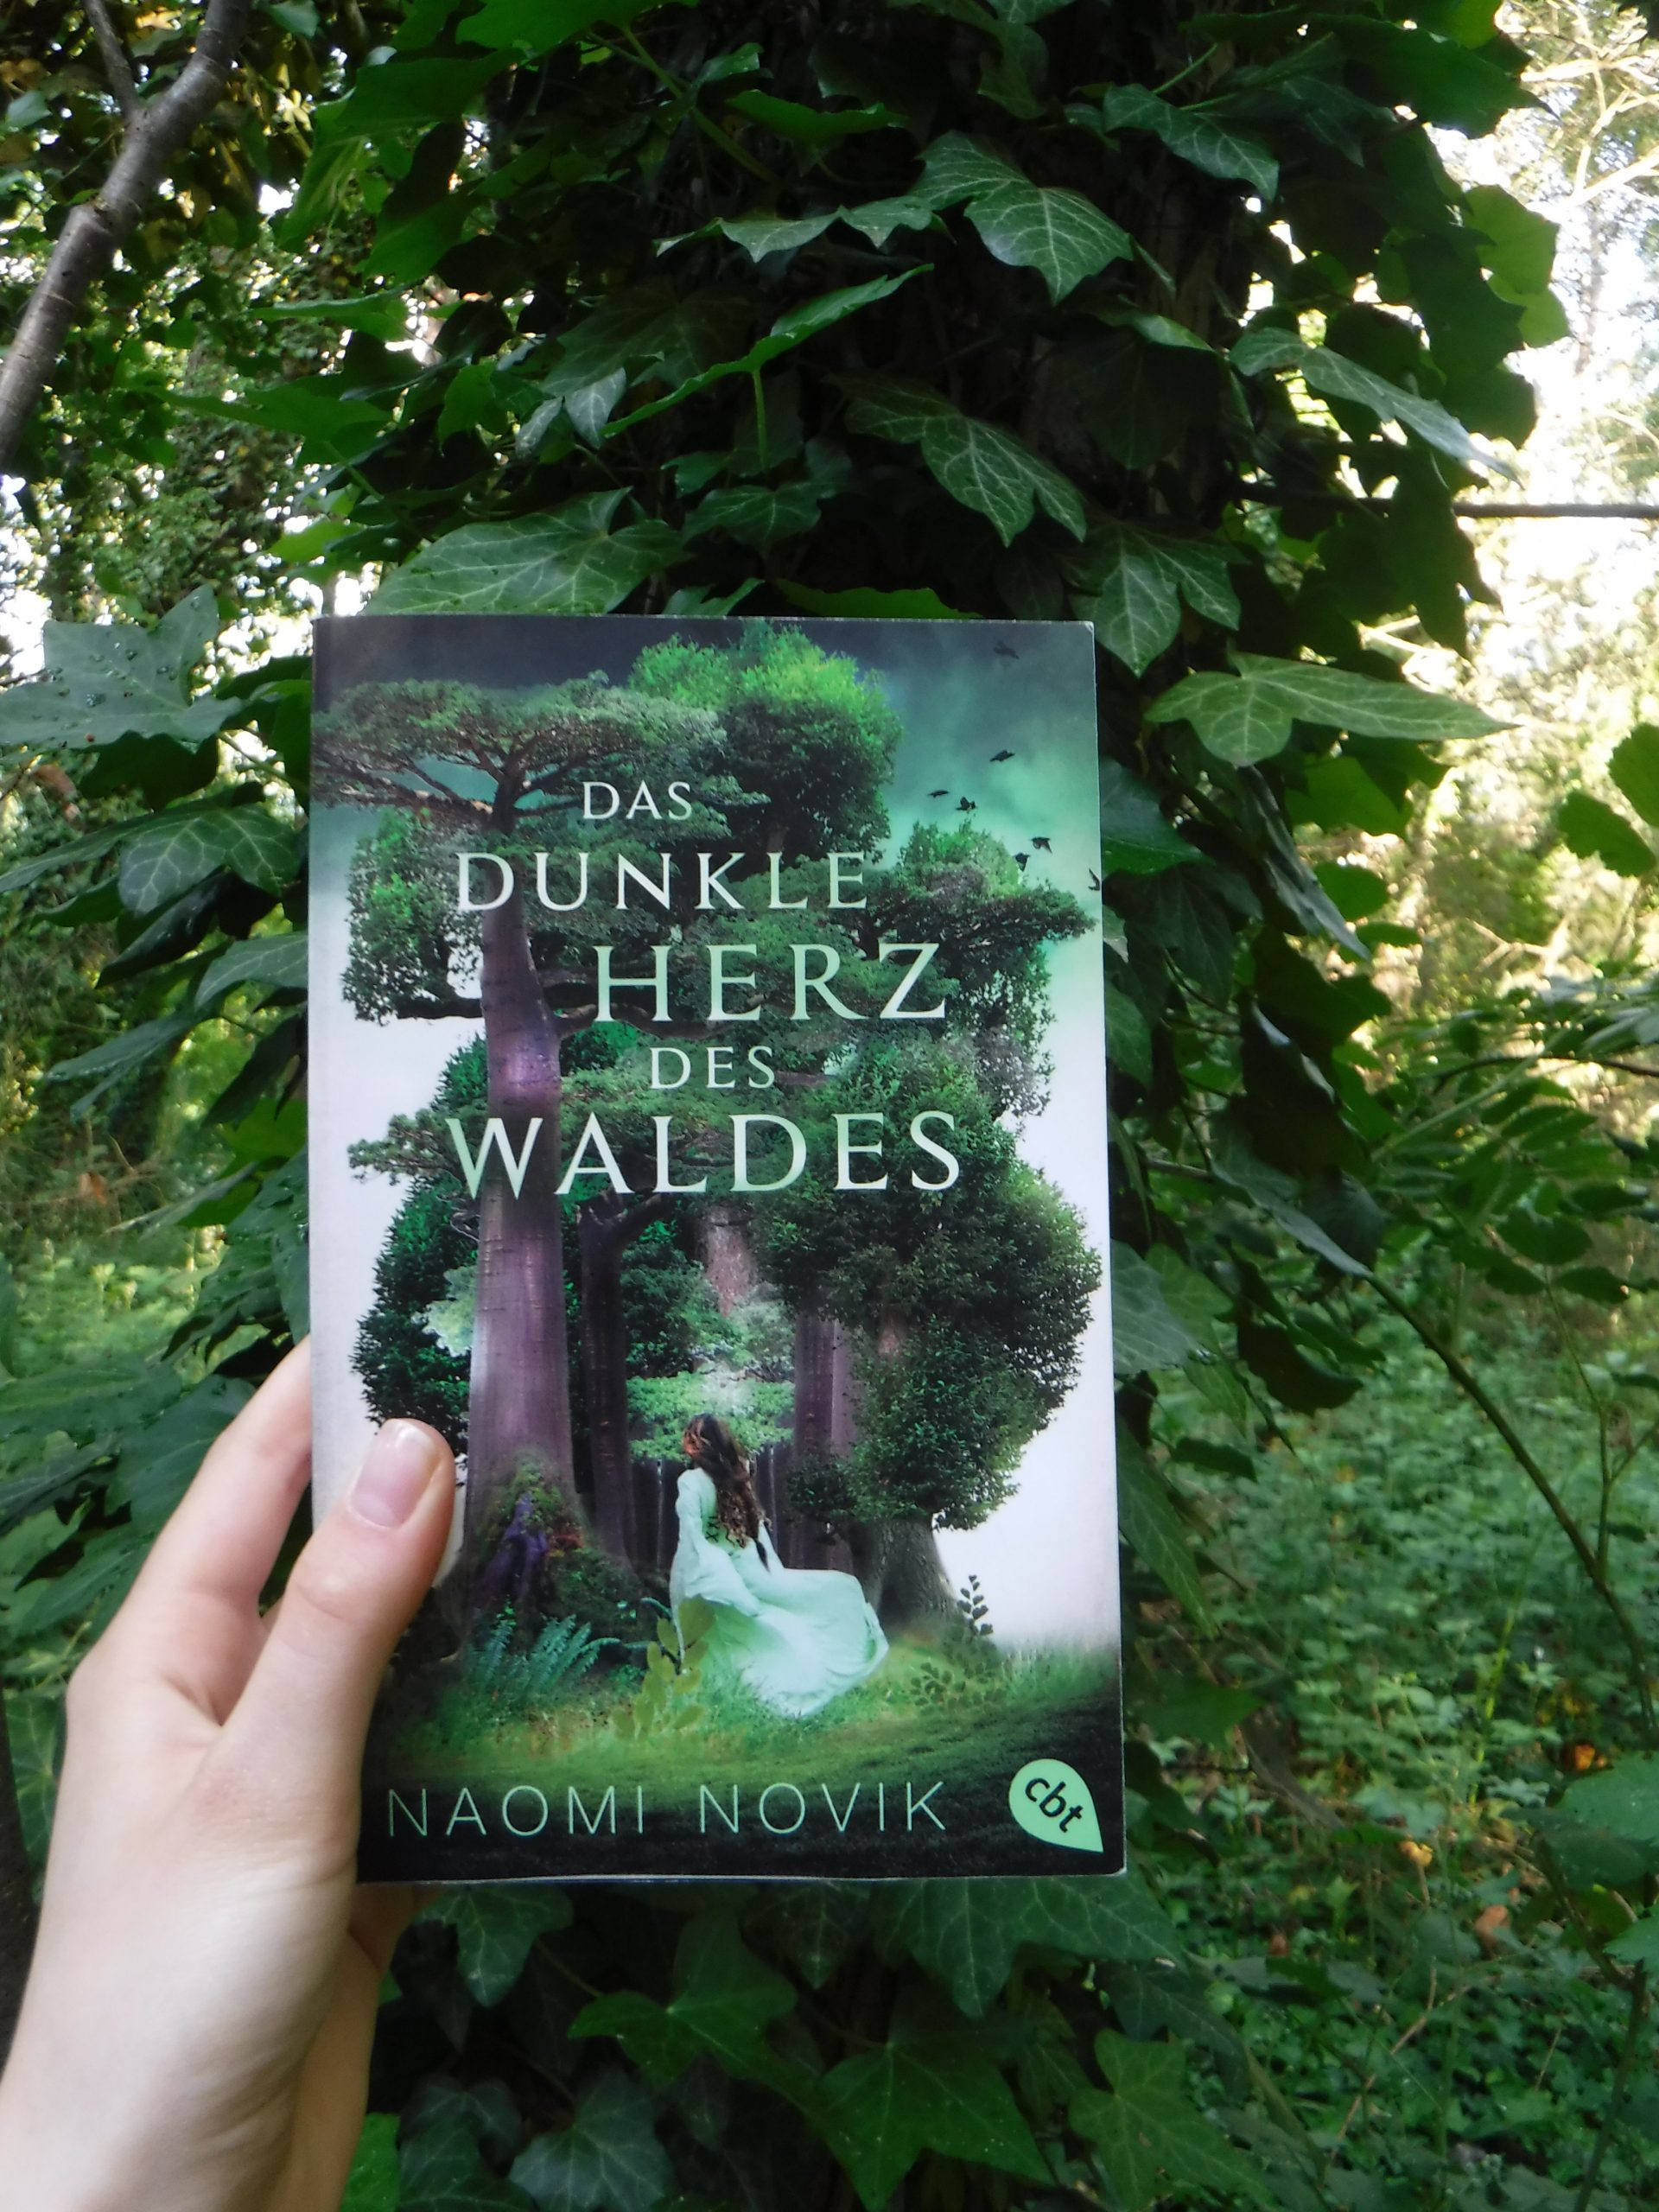 Das dunkle Herz des Waldes by Naomi Novik